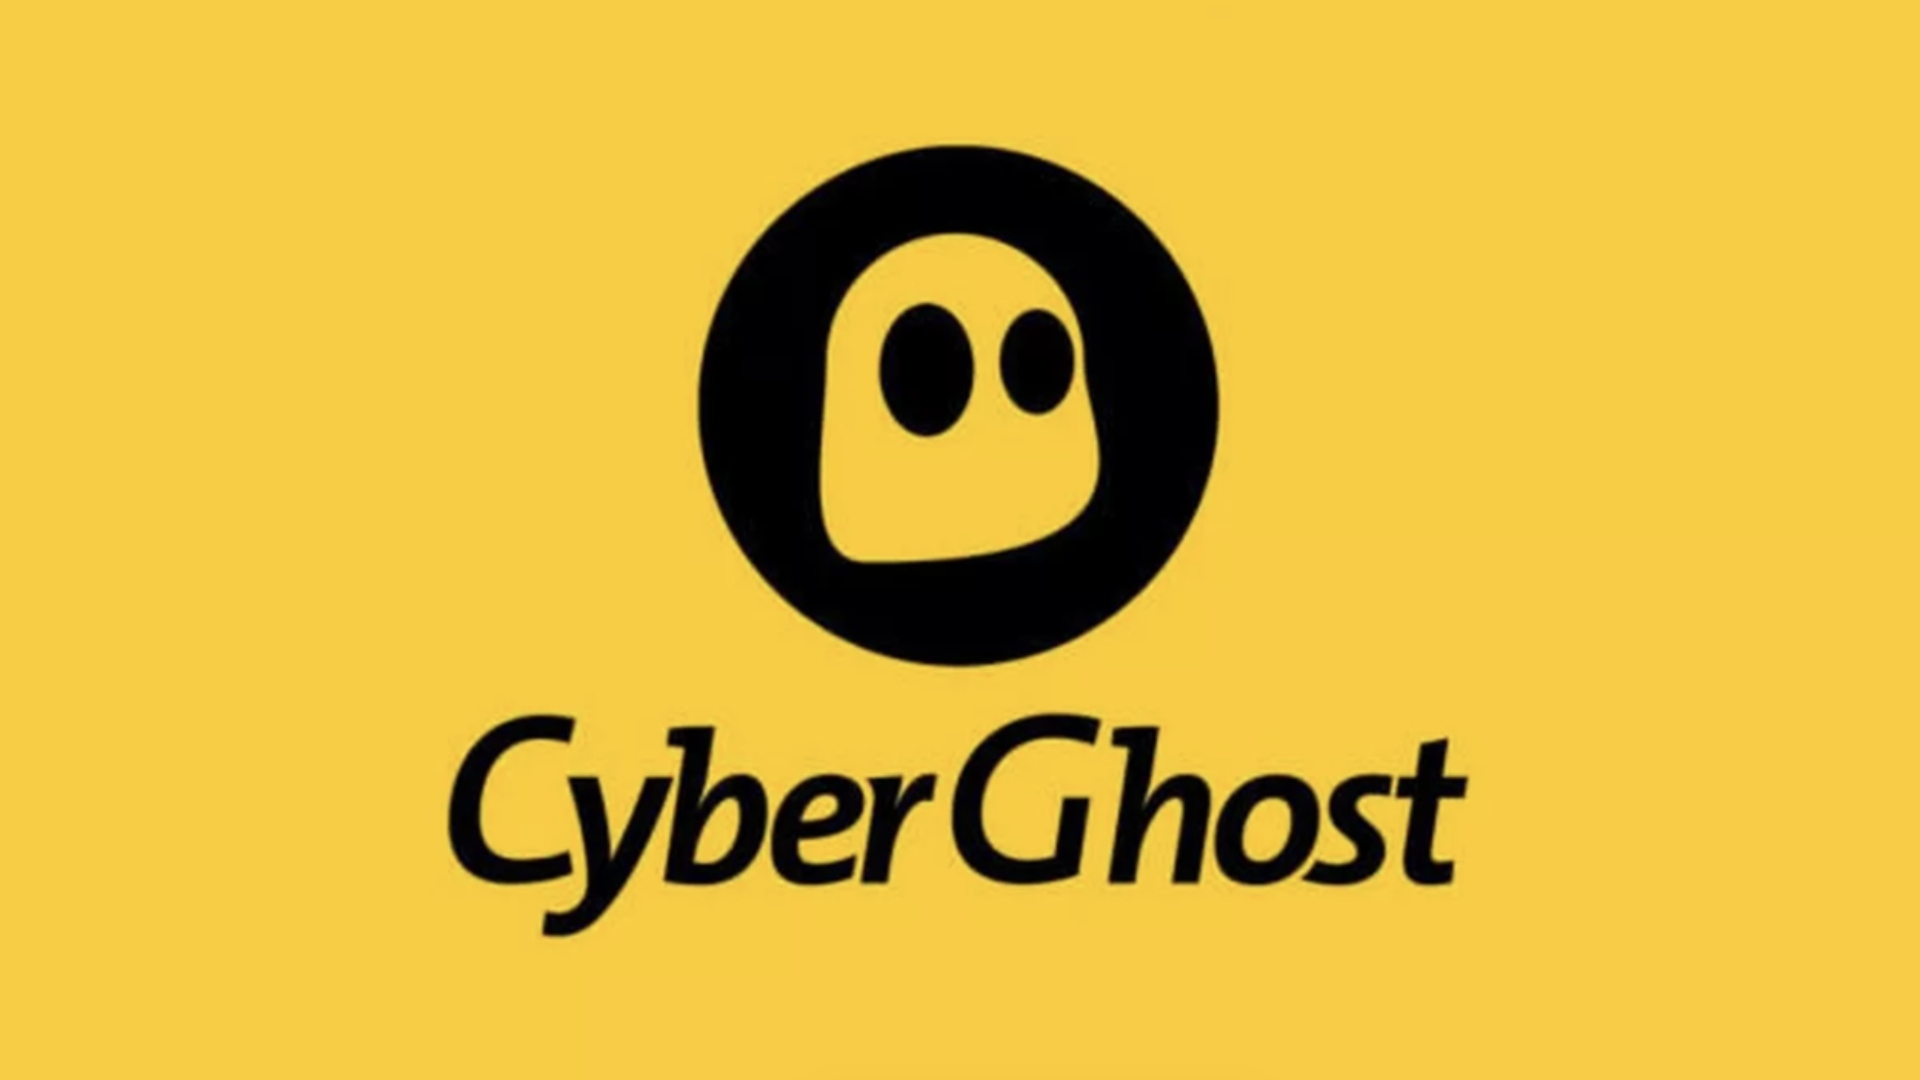 ה- VPN הטוב ביותר לאייפד - Cyberghost. תמונה מציגה את לוגו החברה